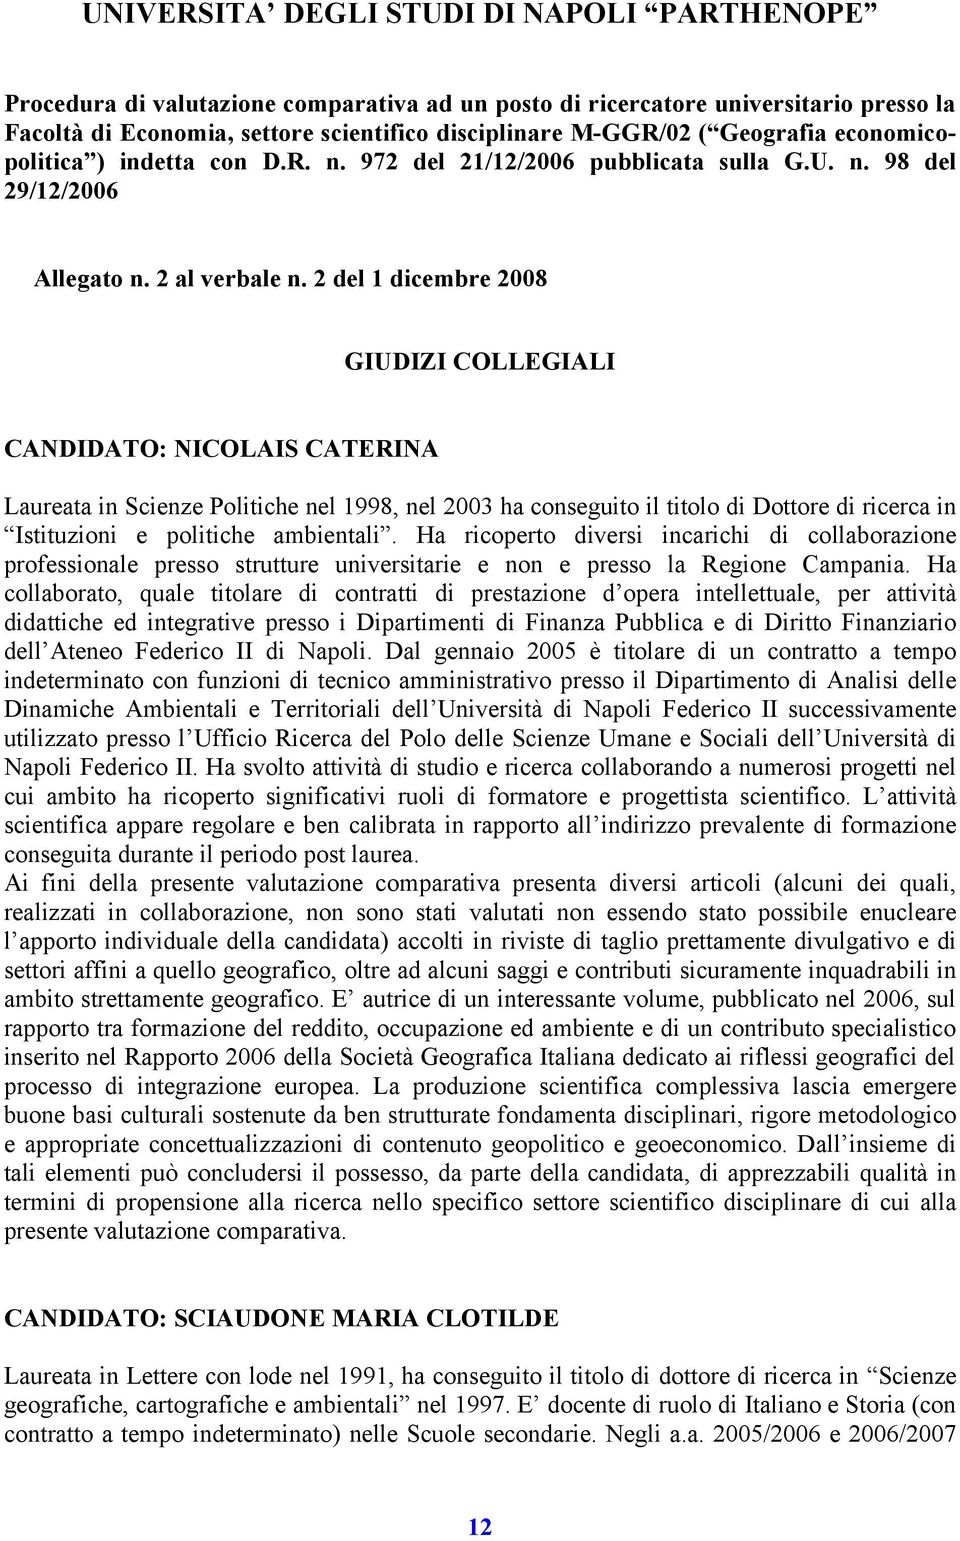 2 del 1 dicembre 2008 GIUDIZI COLLEGIALI CANDIDATO: NICOLAIS CATERINA Laureata in Scienze Politiche nel 1998, nel 2003 ha conseguito il titolo di Dottore di ricerca in Istituzioni e politiche